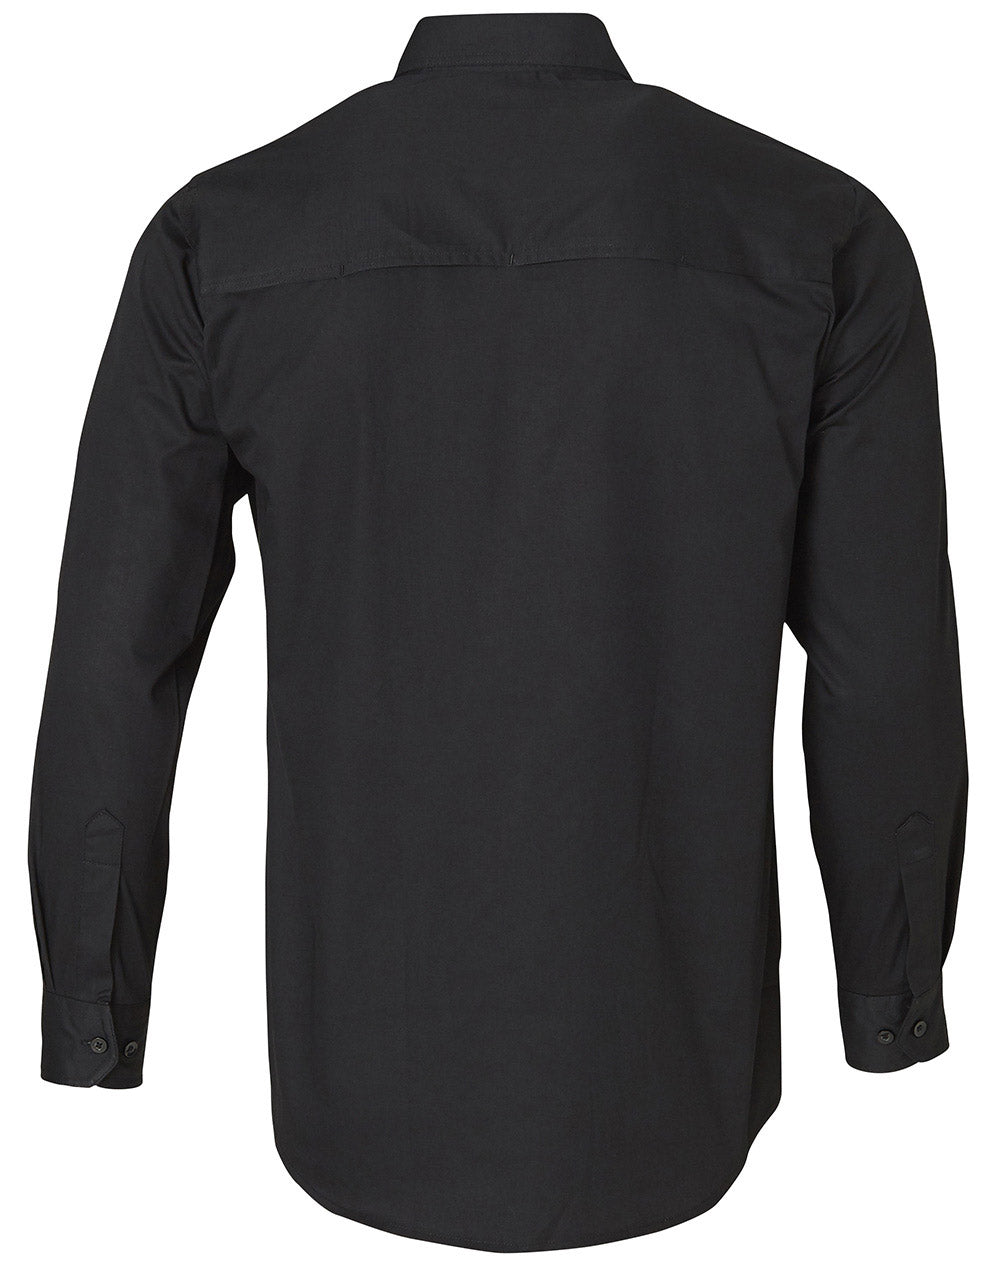 Winning Spirit-Cool-Breeze Long Sleeve Cotton Work Shirt-WT02